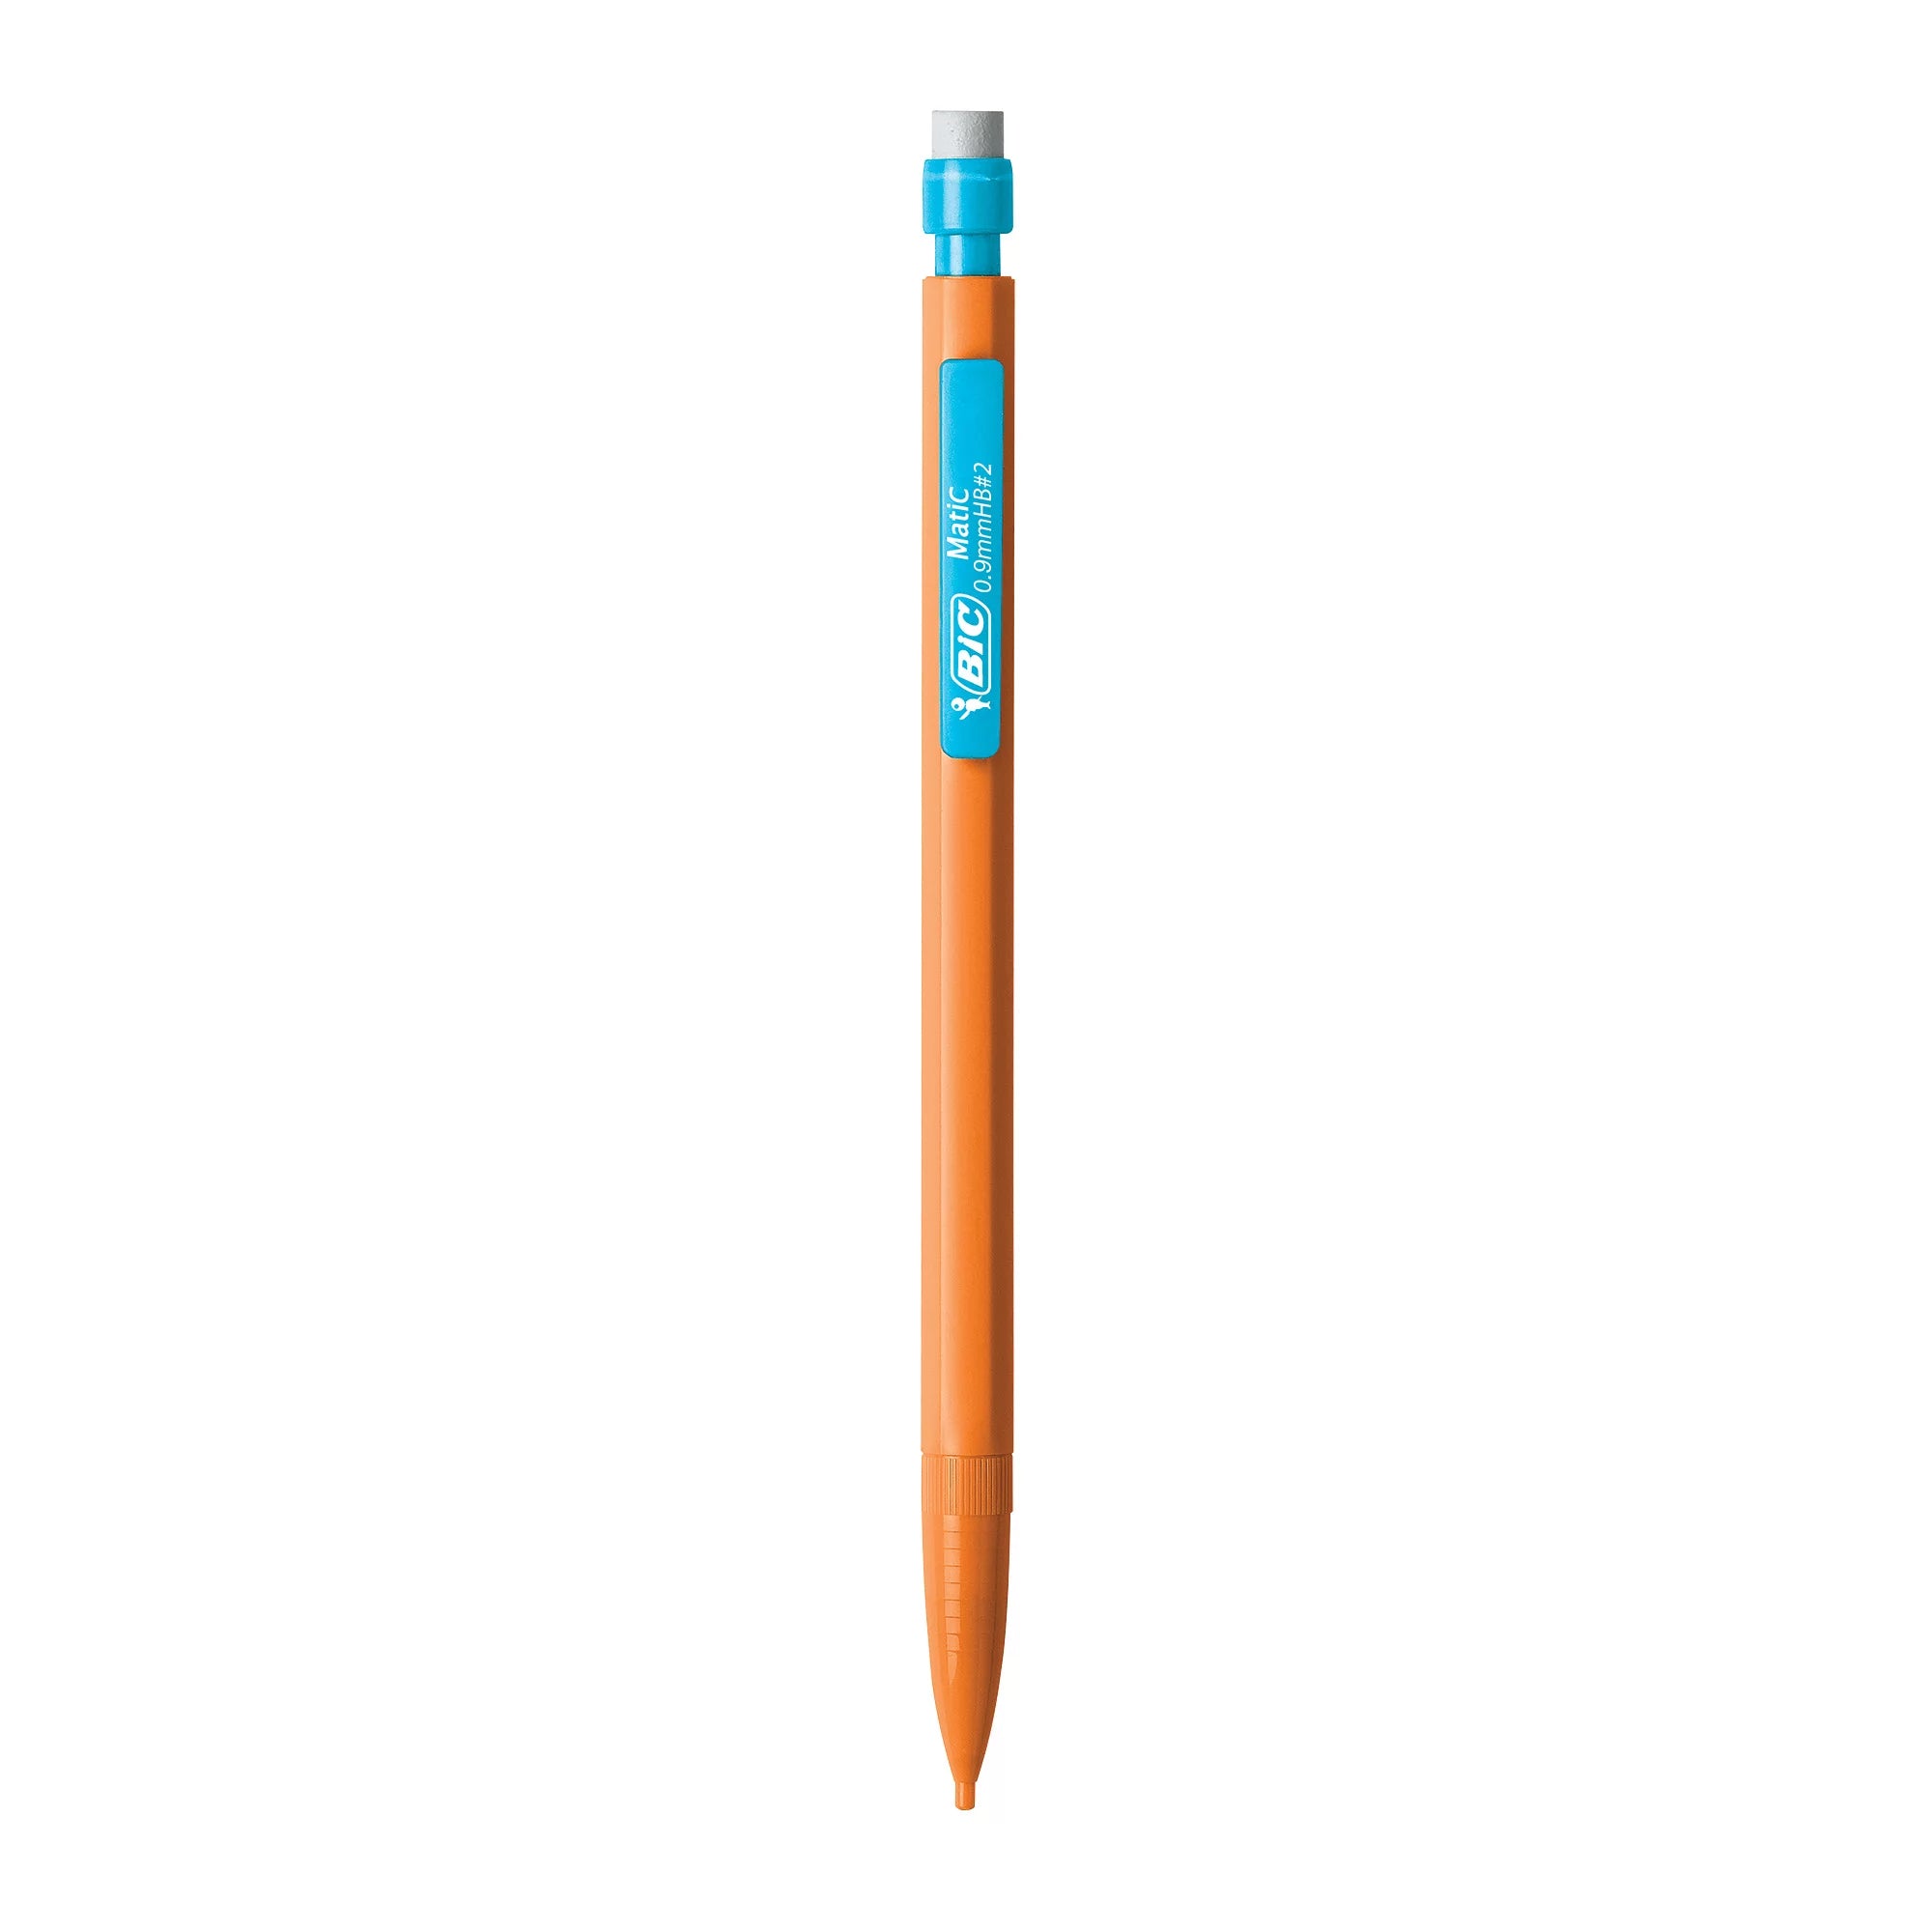 قلم رصاص ميكانيكي BIC قوي للغاية ، أقلام رصاص ميكانيكية مع ممحاة للمدرسة أو العمل - نقطة سميكة (0.9 مم)